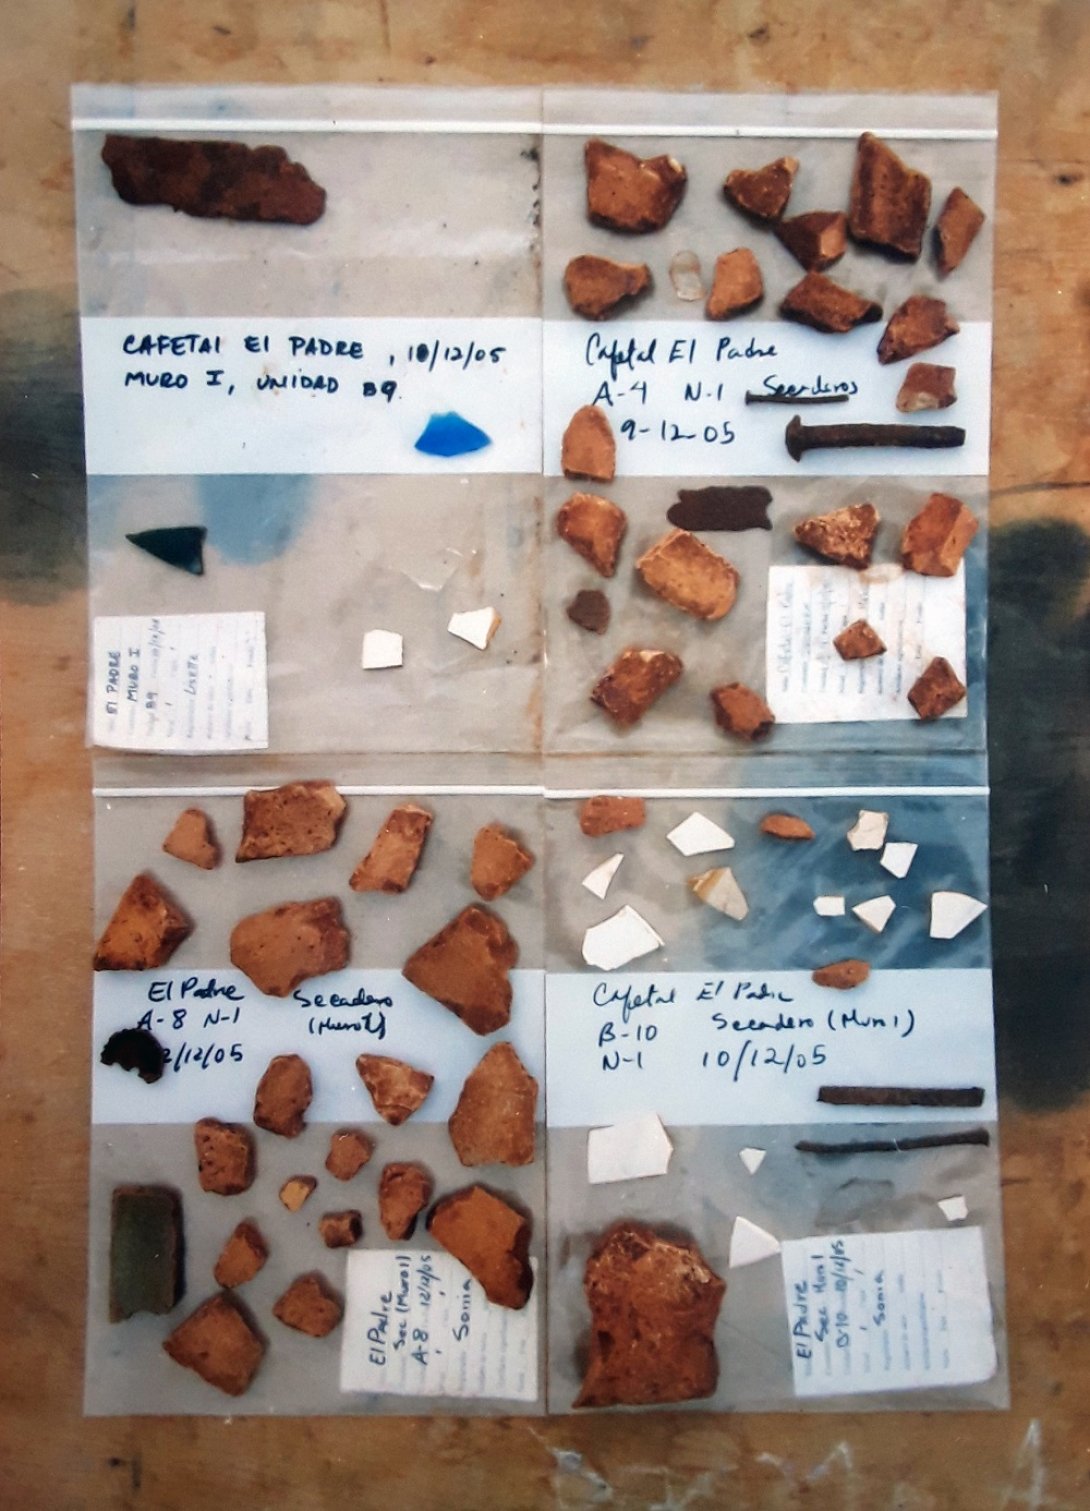 Muestrario de fragmentos cerámicos y otros objetos encontrados en el barracón.